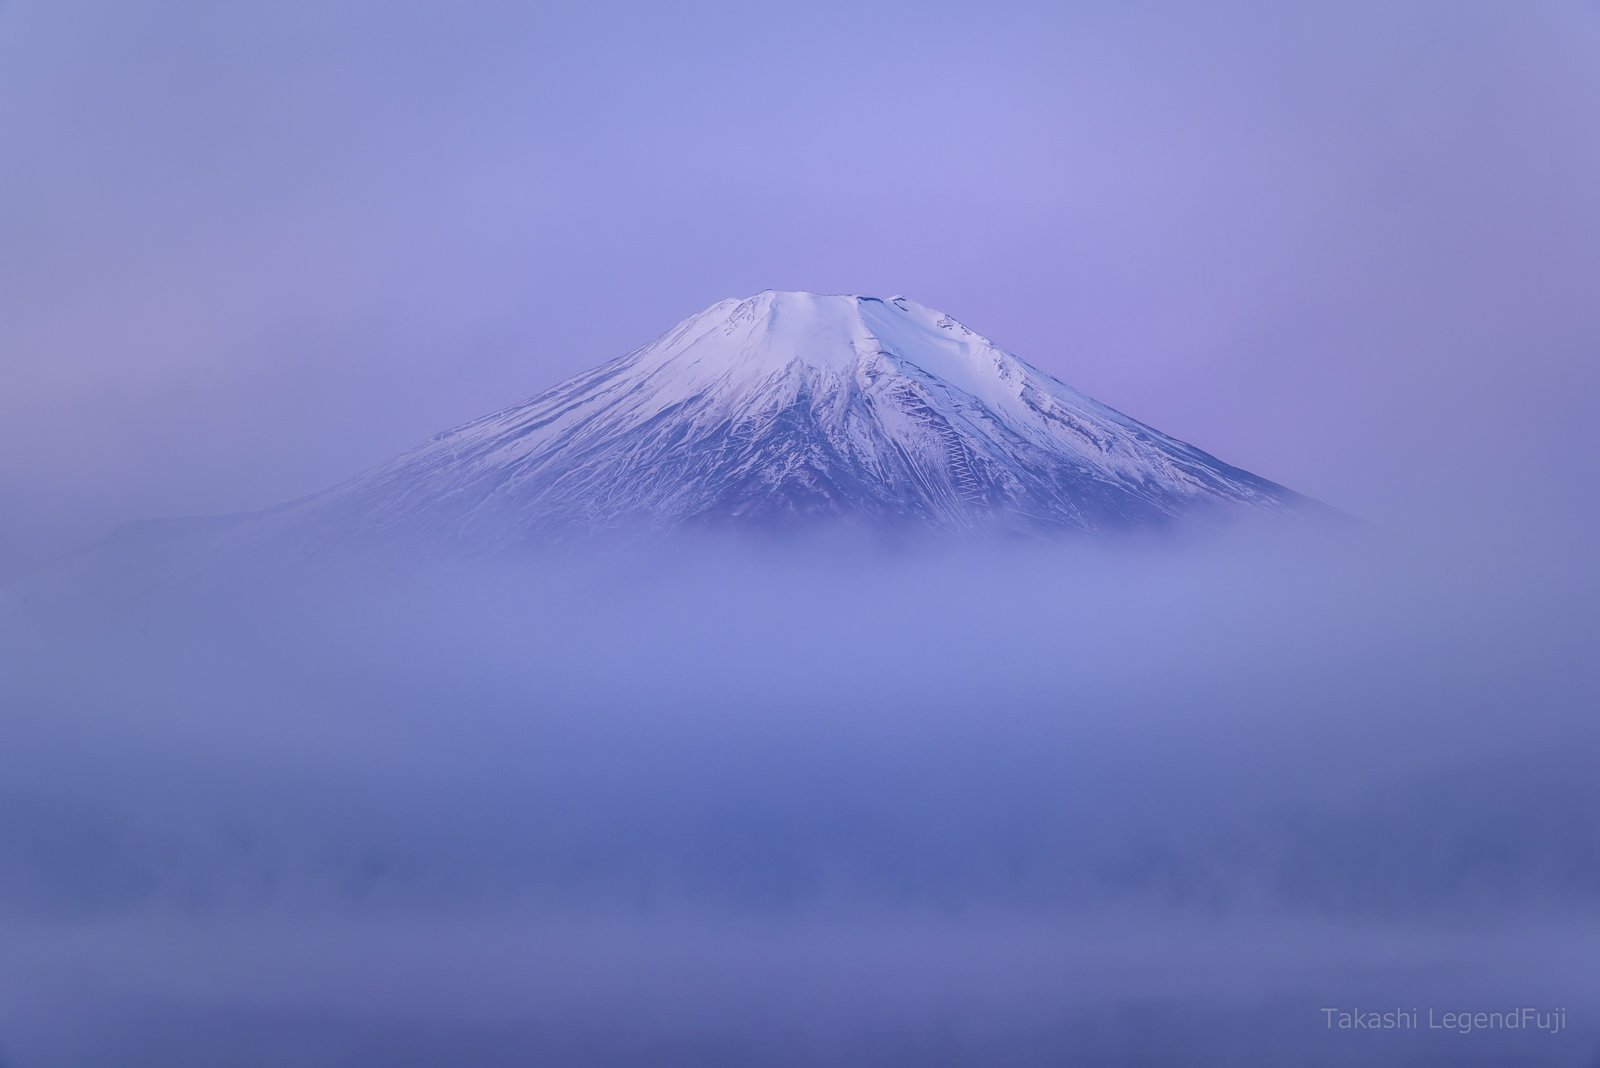 Fuji,mountain,landscape,cloud,fog,gas,lake,water,snow,peak,morning,dawn,white,blue,pink,Japan, Takashi